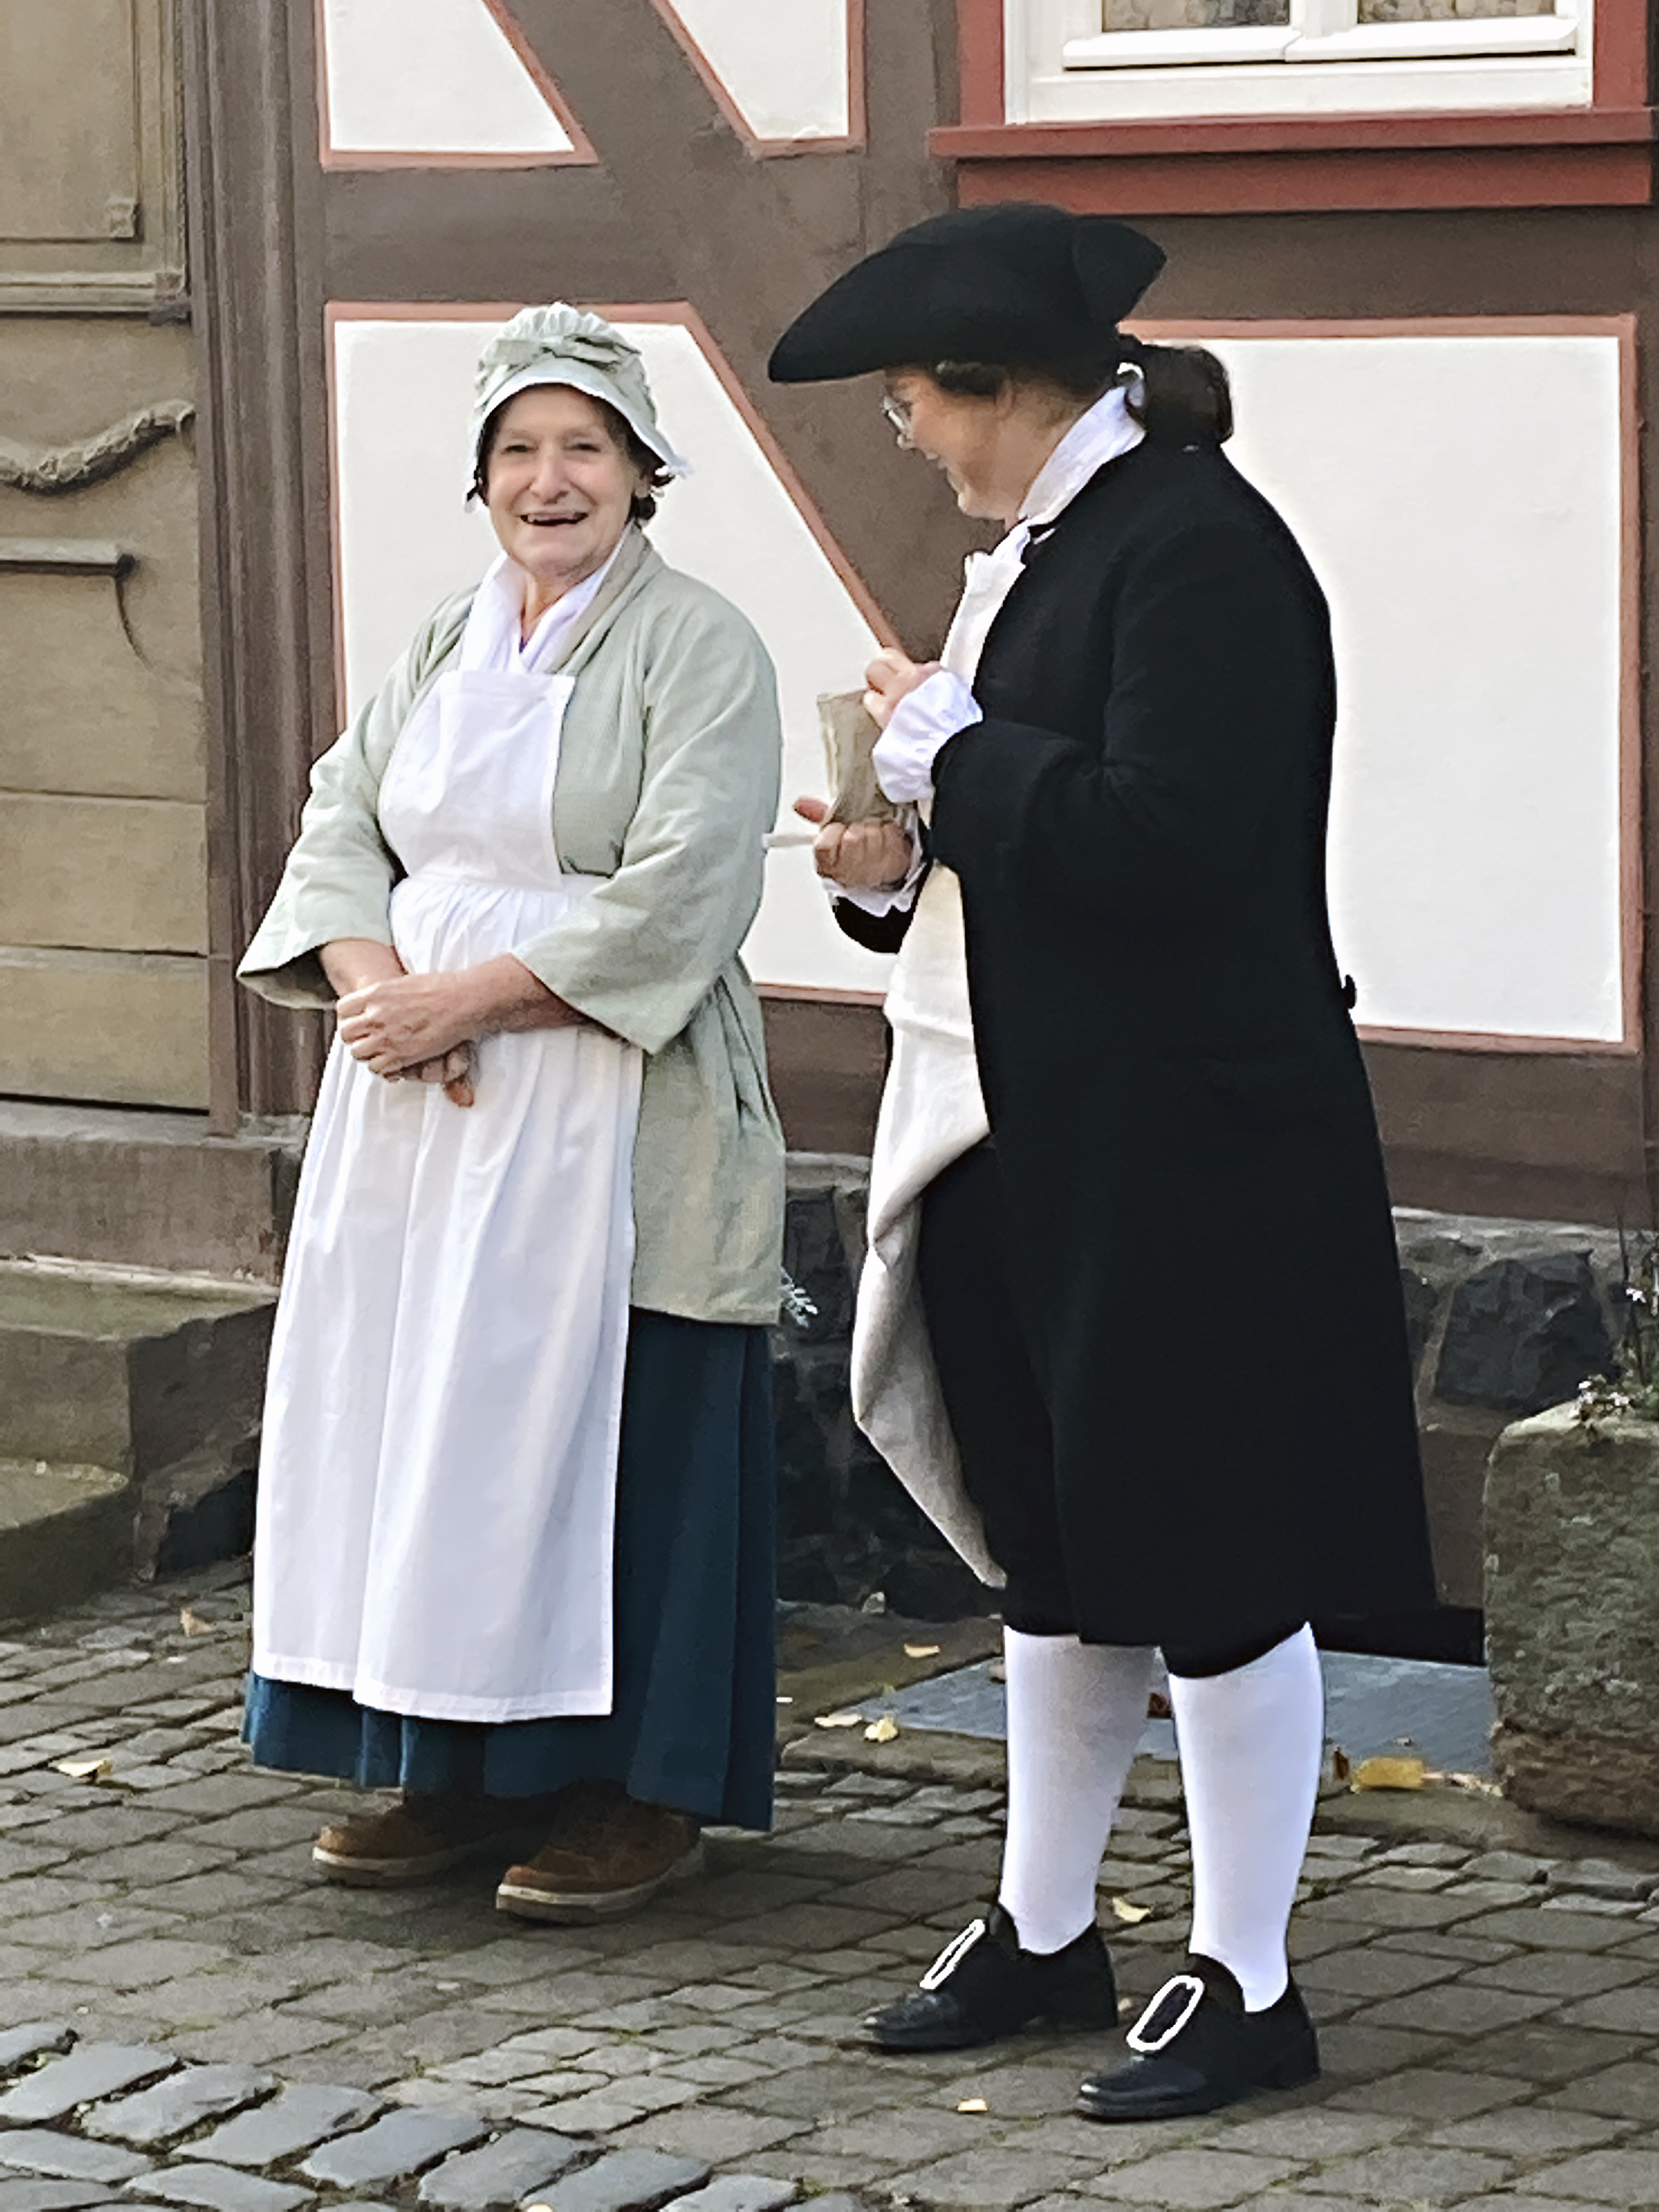 Aus vergangenen Zeiten berichten die Stadtführer Lauterbachs in ihren historischen Gewändern Geschichte und Geschichten rund um die Kreisstadt des Vogelsbergkreises.